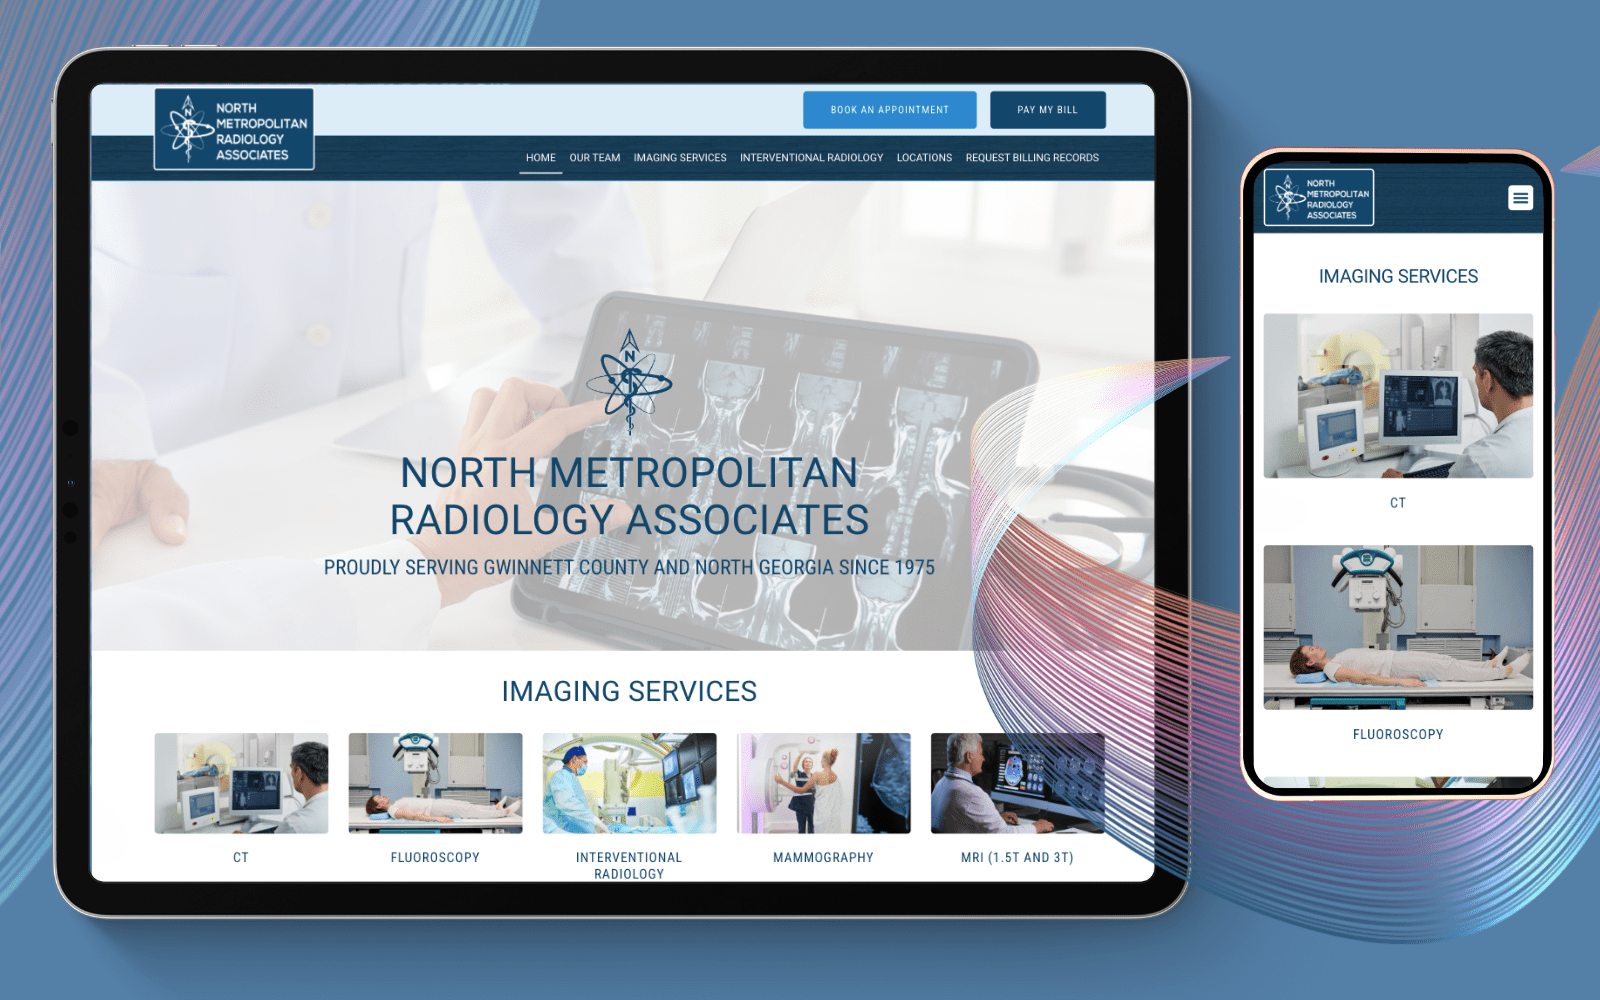 North Metropolitan Radiology Associates website. A medical radiology online platform for specialized services.